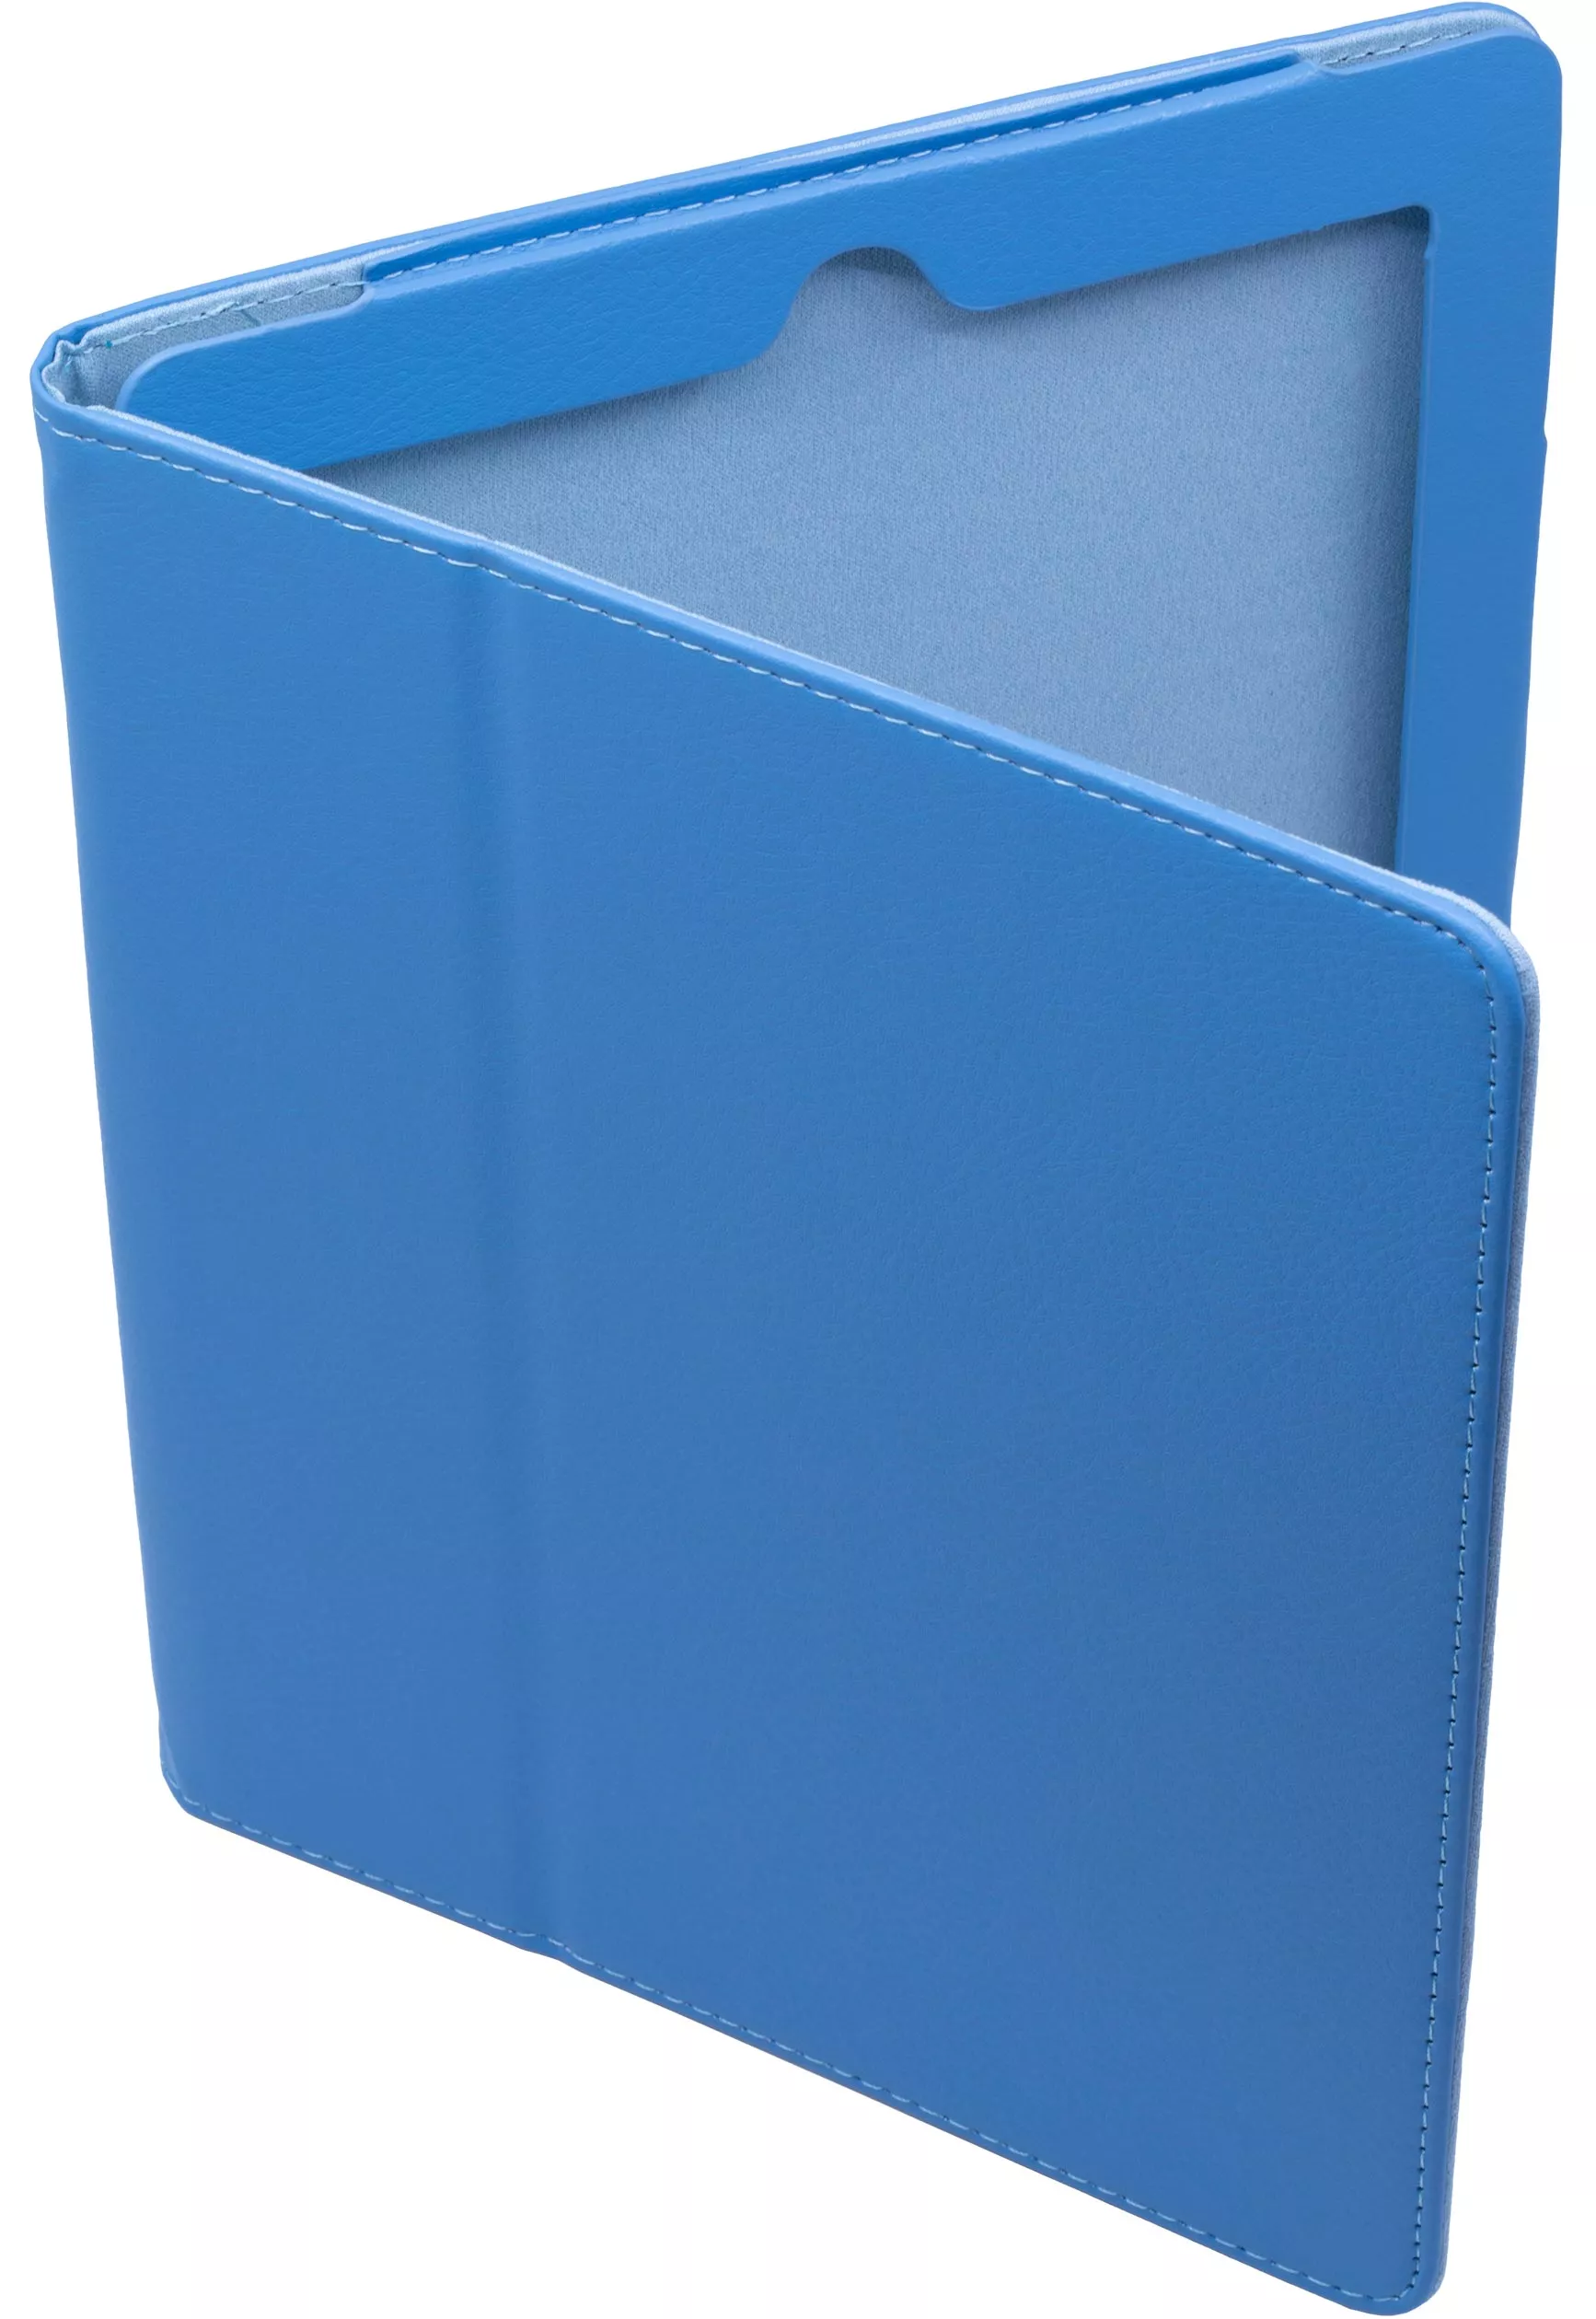 Чехол Stand для iPad 2/3/4 - Голубой. Вид 1